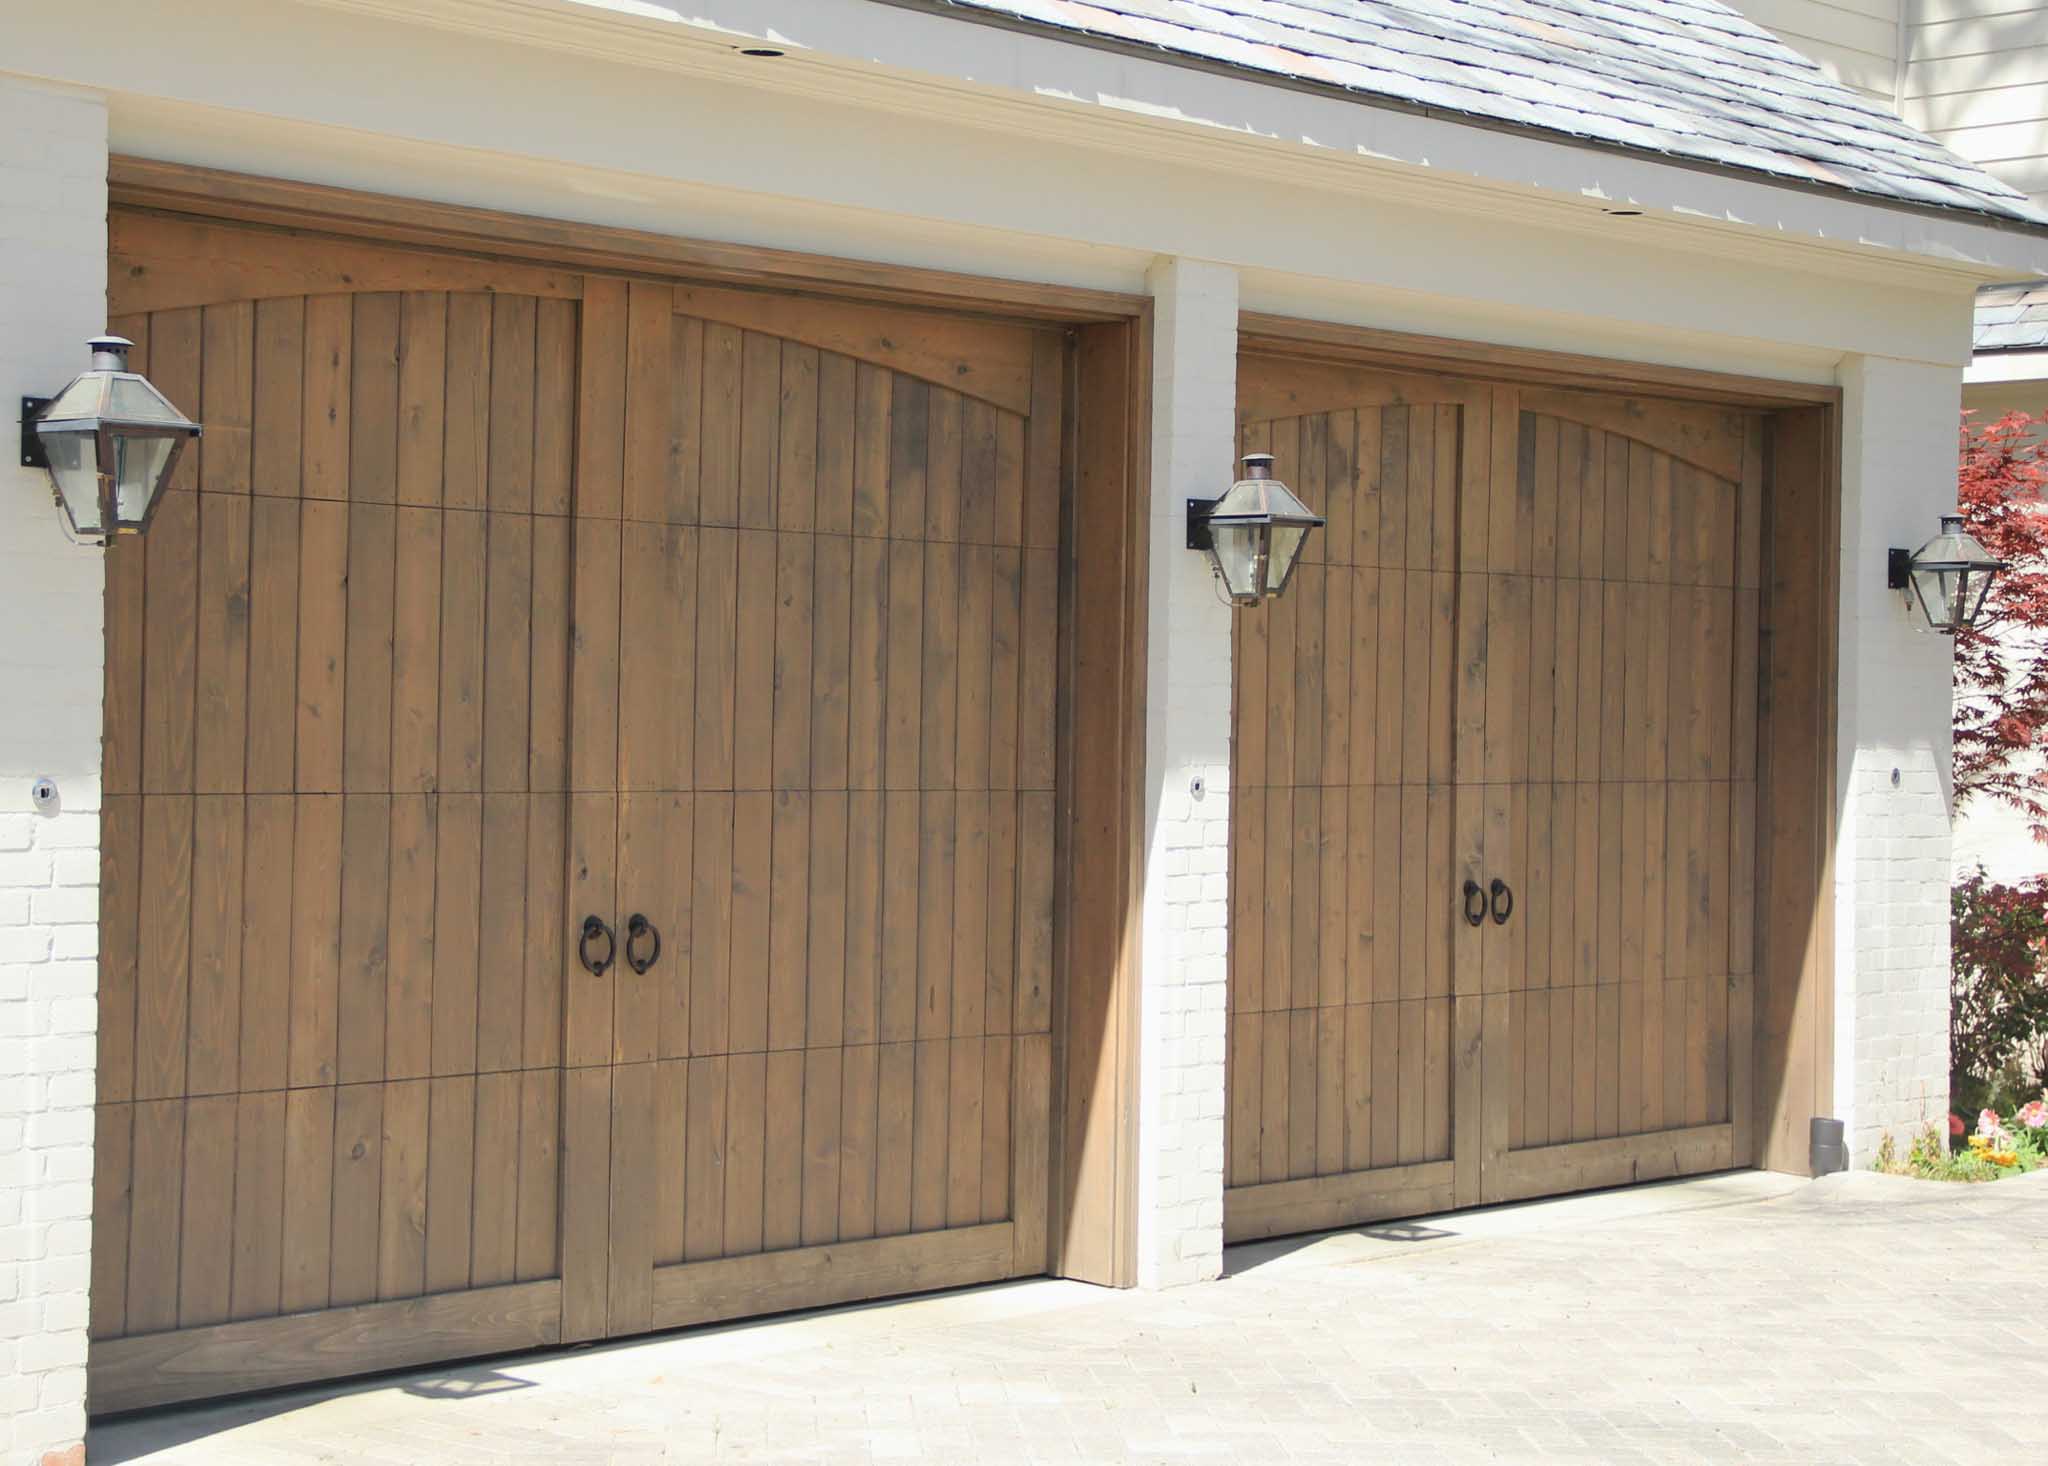 8x7 vertical panel wood garage door with eyebrow trim and knocker hardware